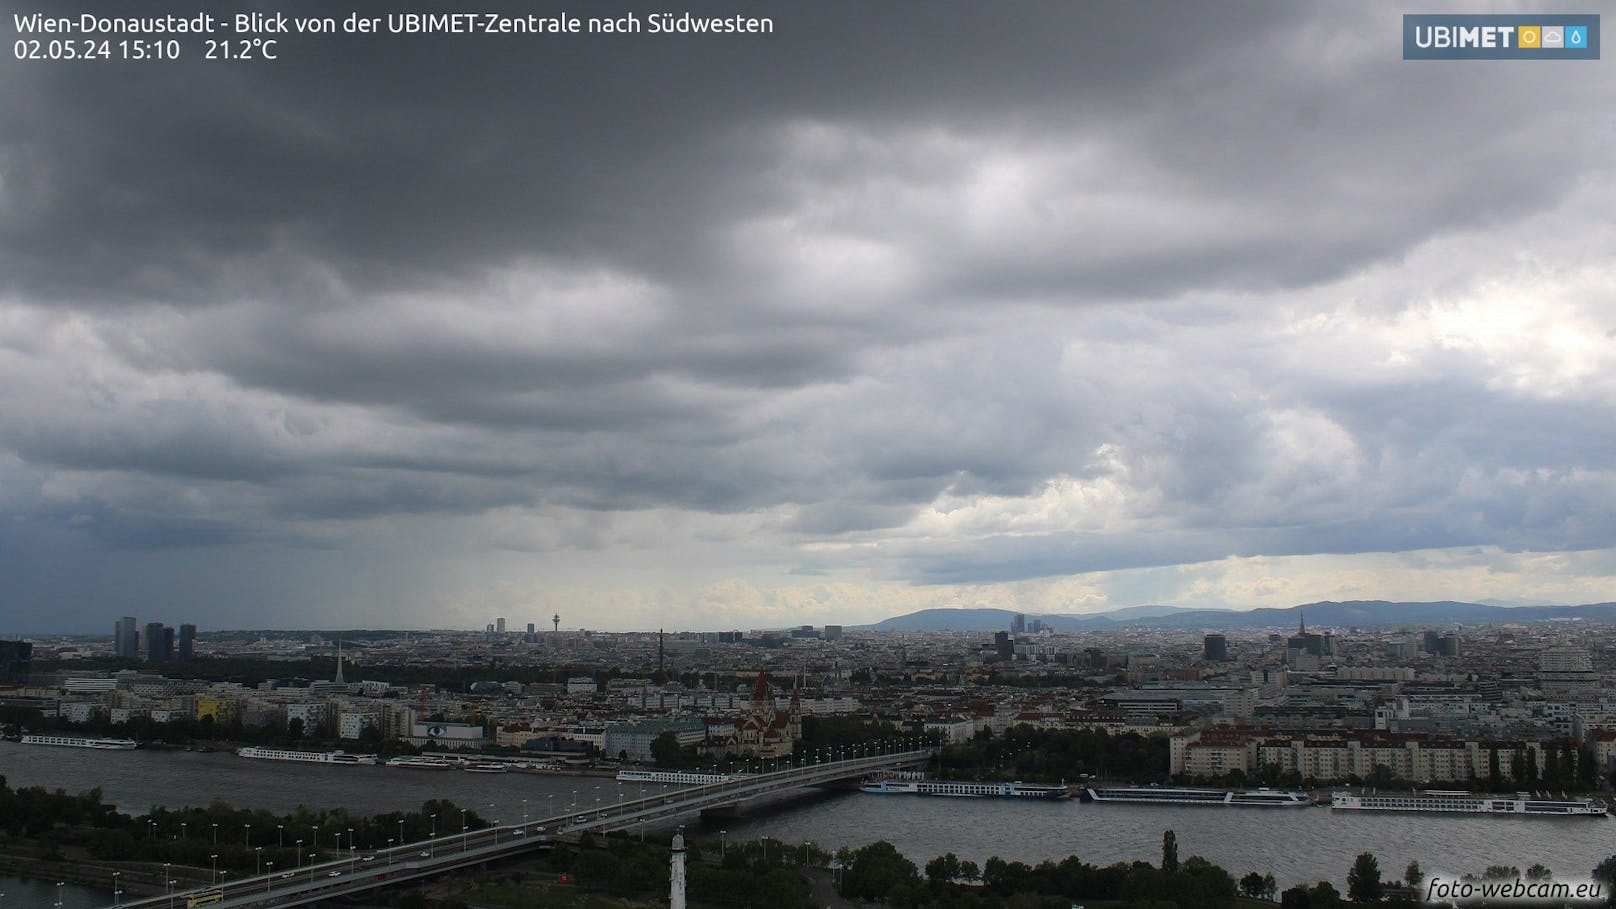 Donnerstagnachmittag fegte eine Regen-Walze über Wien hinweg.